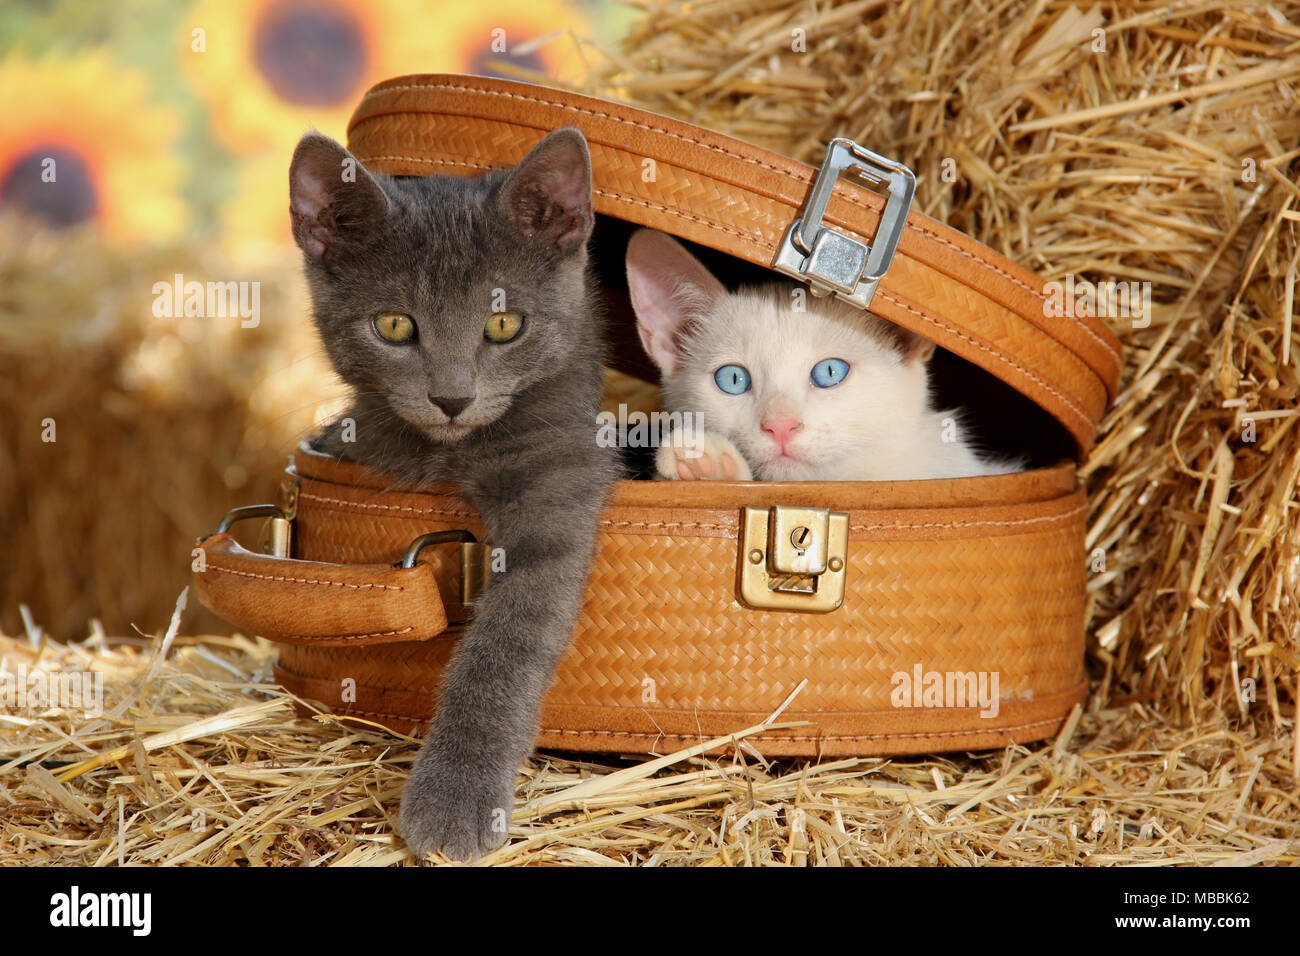 Deux chatons mignons, bleu et blanc, assis dans un panier Banque D'Images